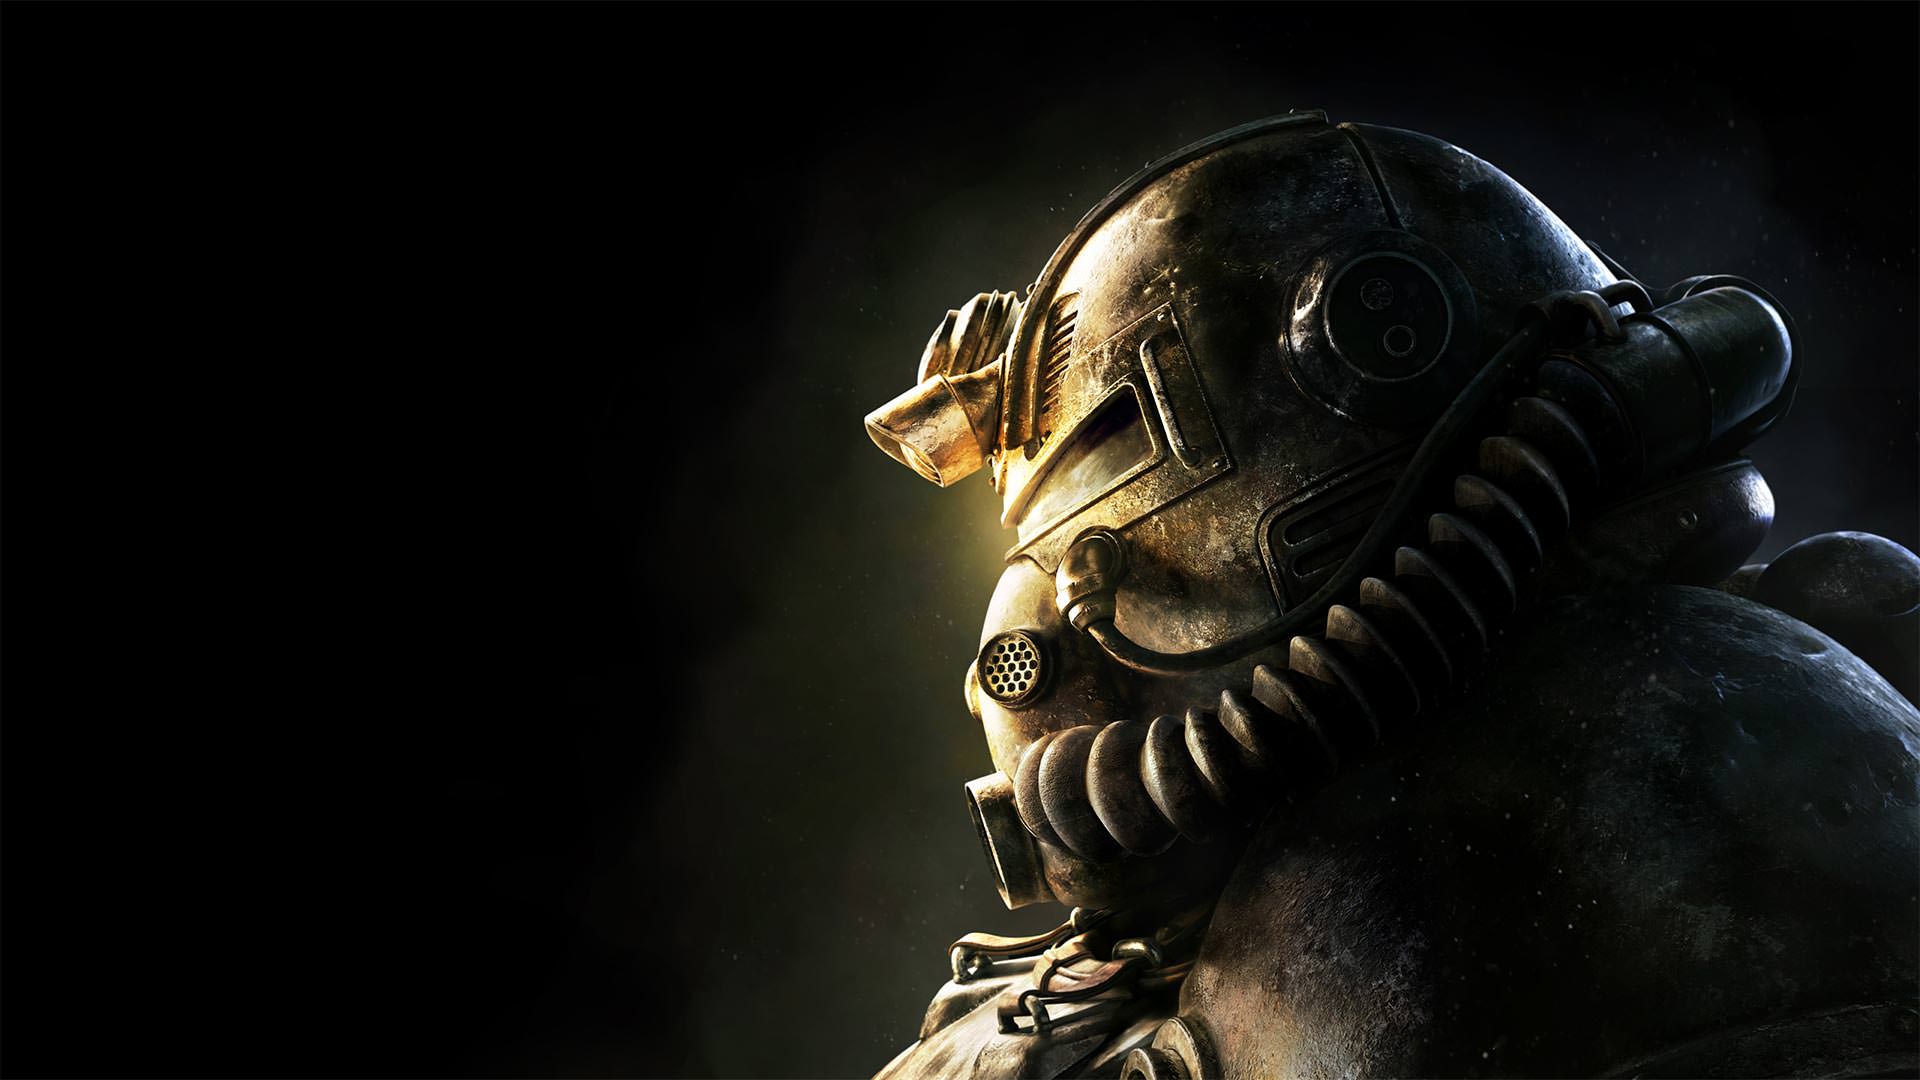 اضافه شدن استودیو Sperasoft به تیم پشتیبانی از Fallout 76